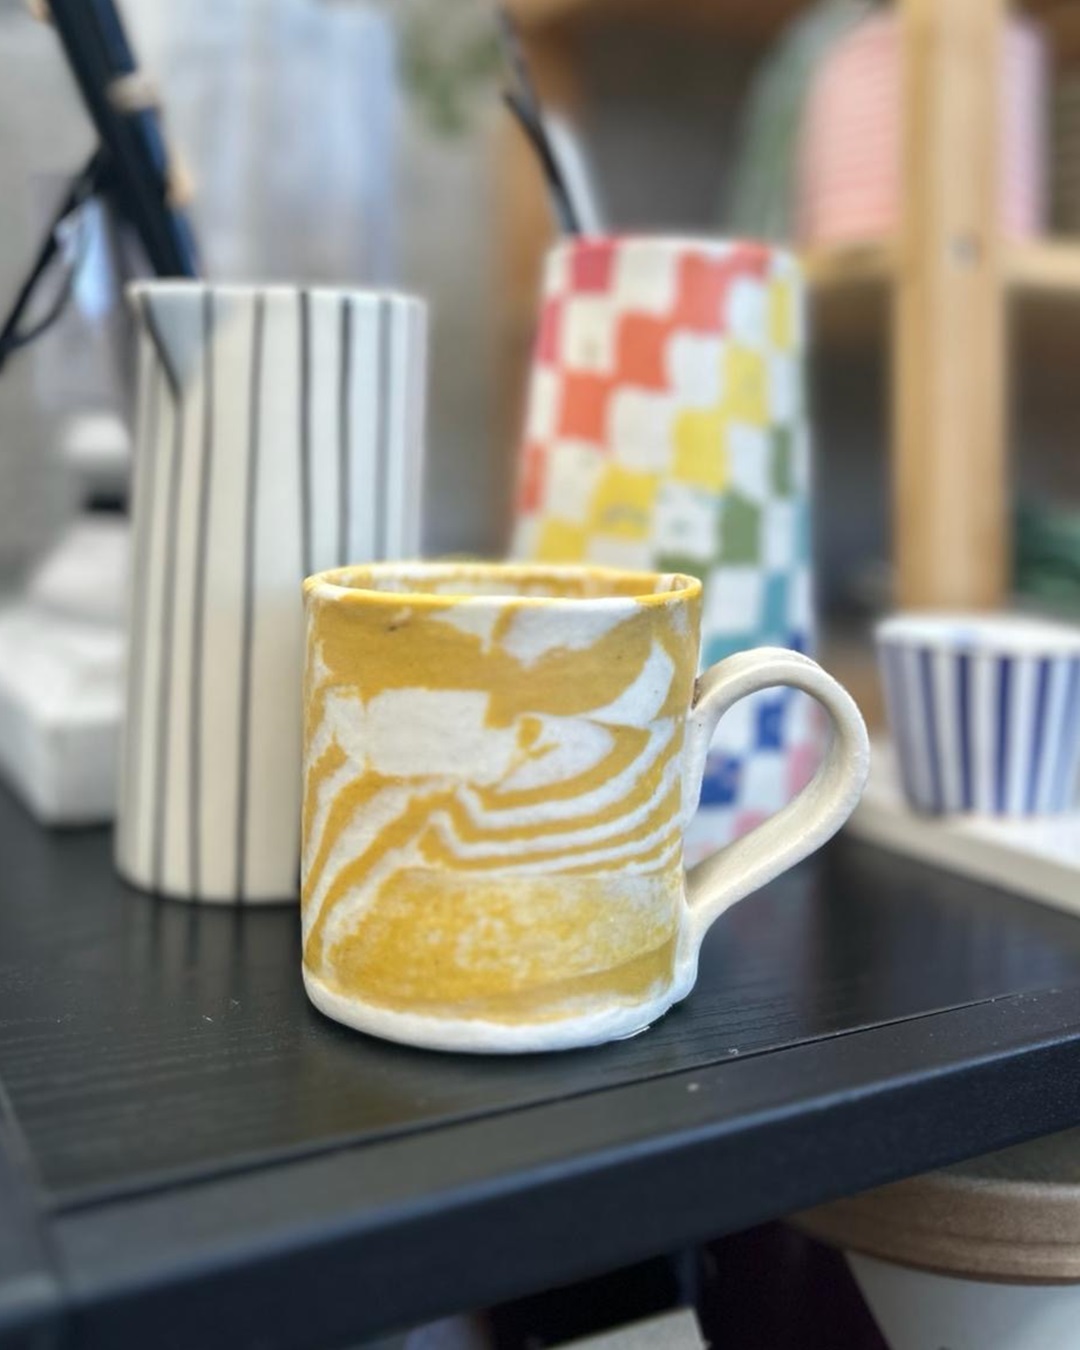 Nerikomi mustard mug on table